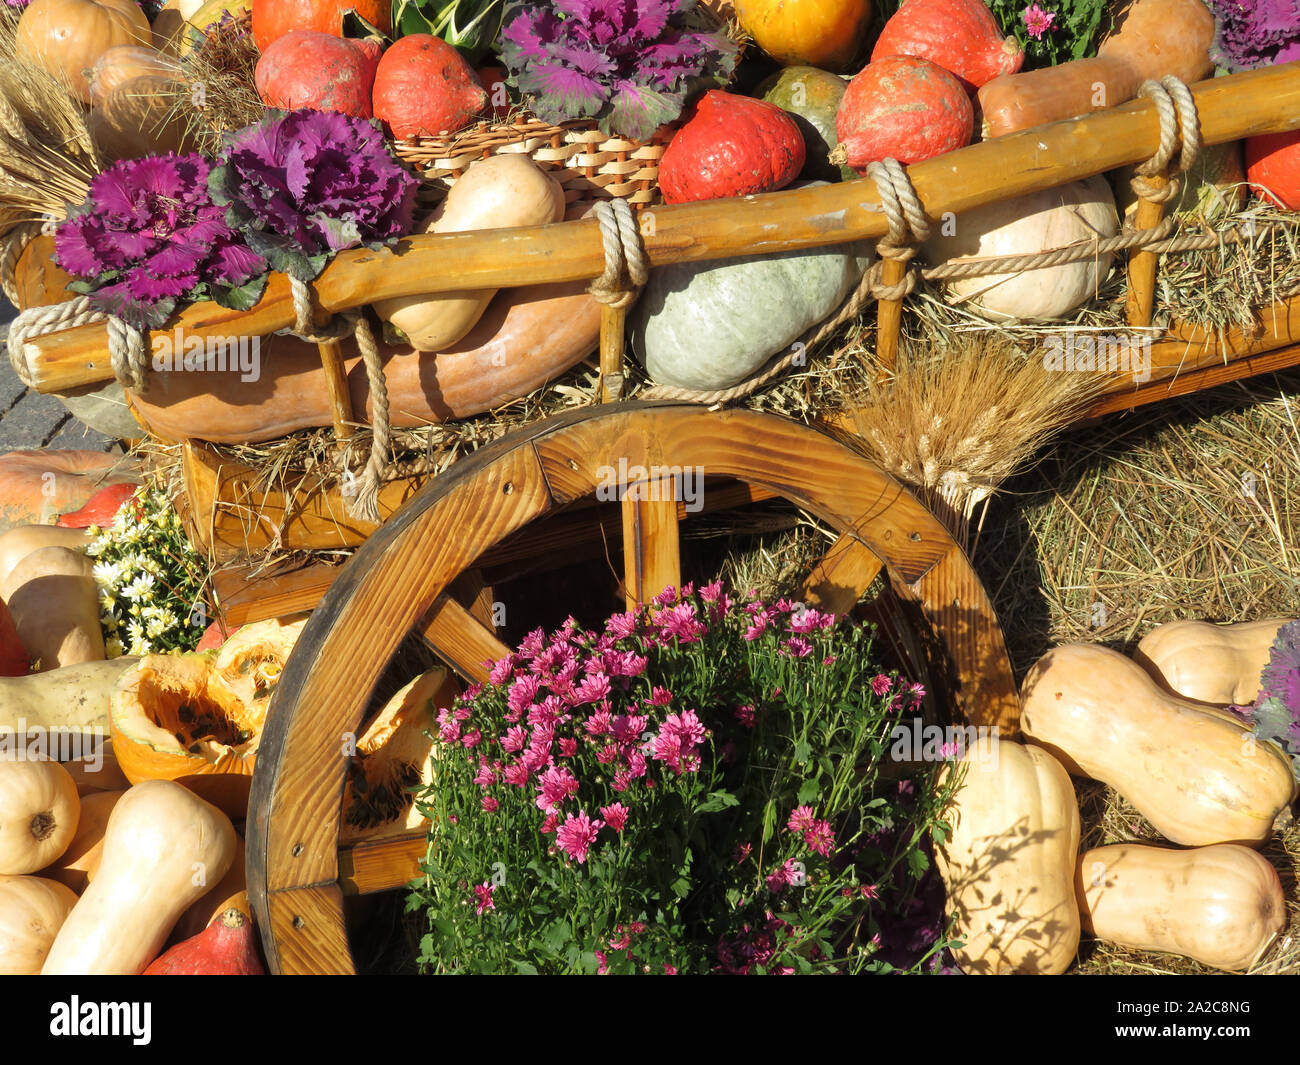 Thanksgiving Day, Holz- Warenkorb mit Kürbissen und Gemüse auf einem Heu. Herbst Ernte Urlaub, festliche Dekorationen mit Blumen Stockfoto